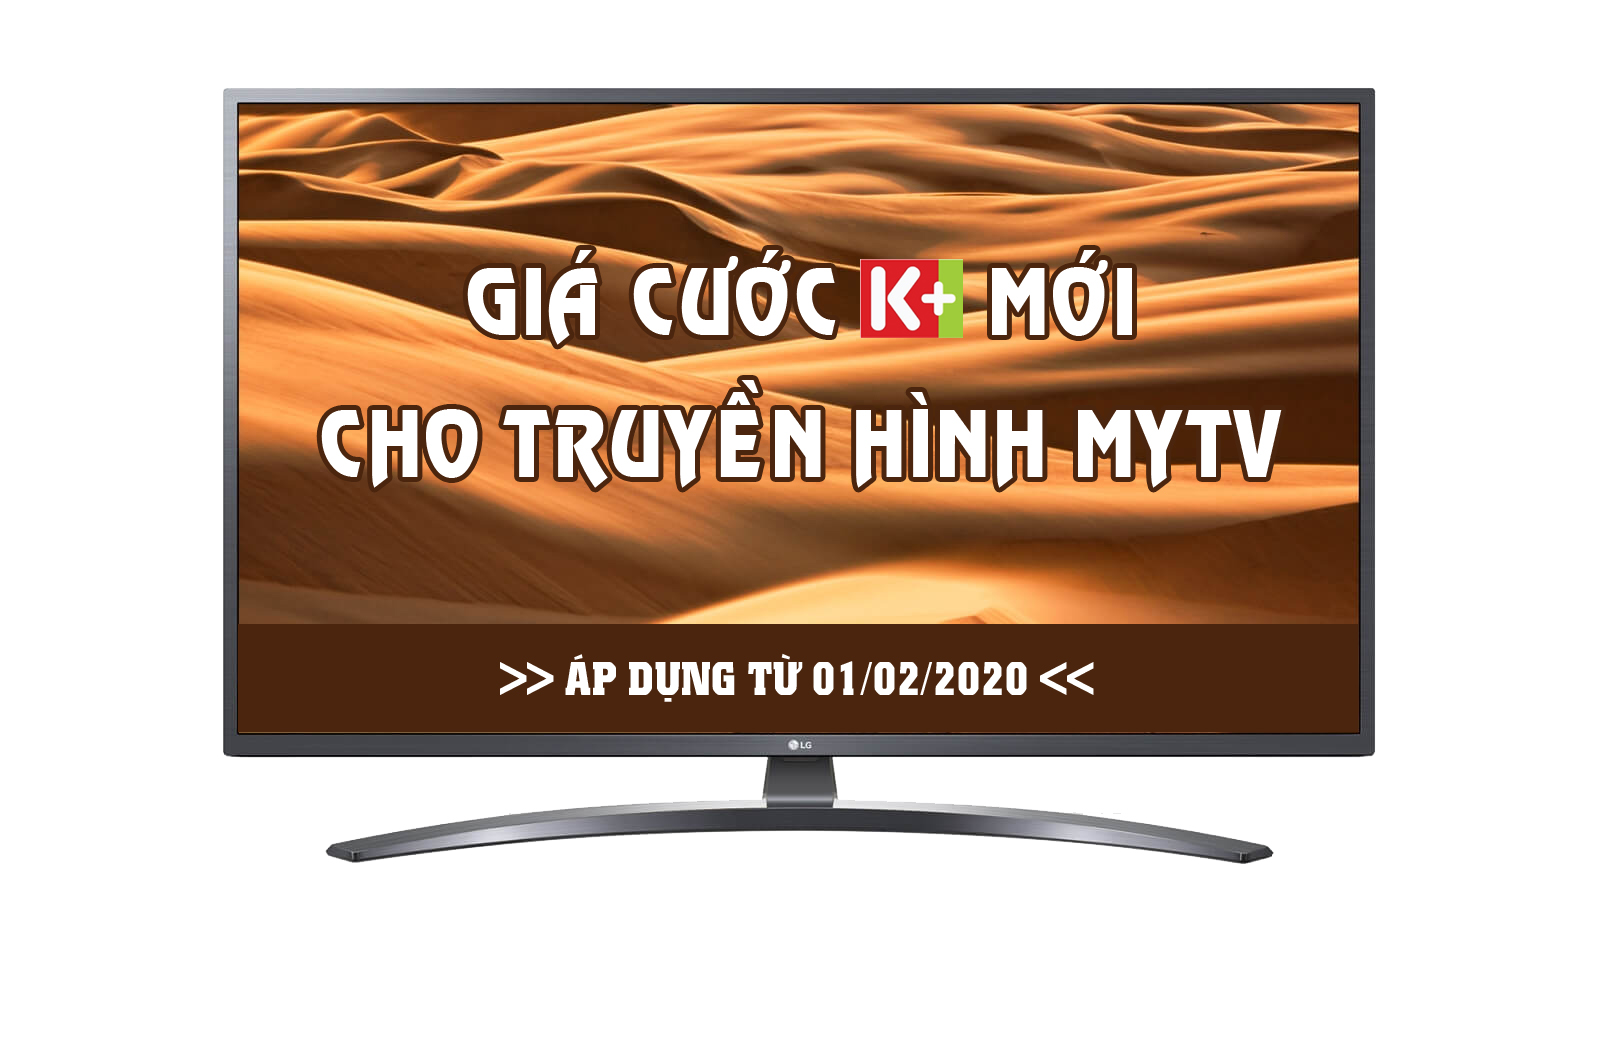 Thông báo giá cước K+ mới cho truyền hình MyTV, gói home TV, Home combo